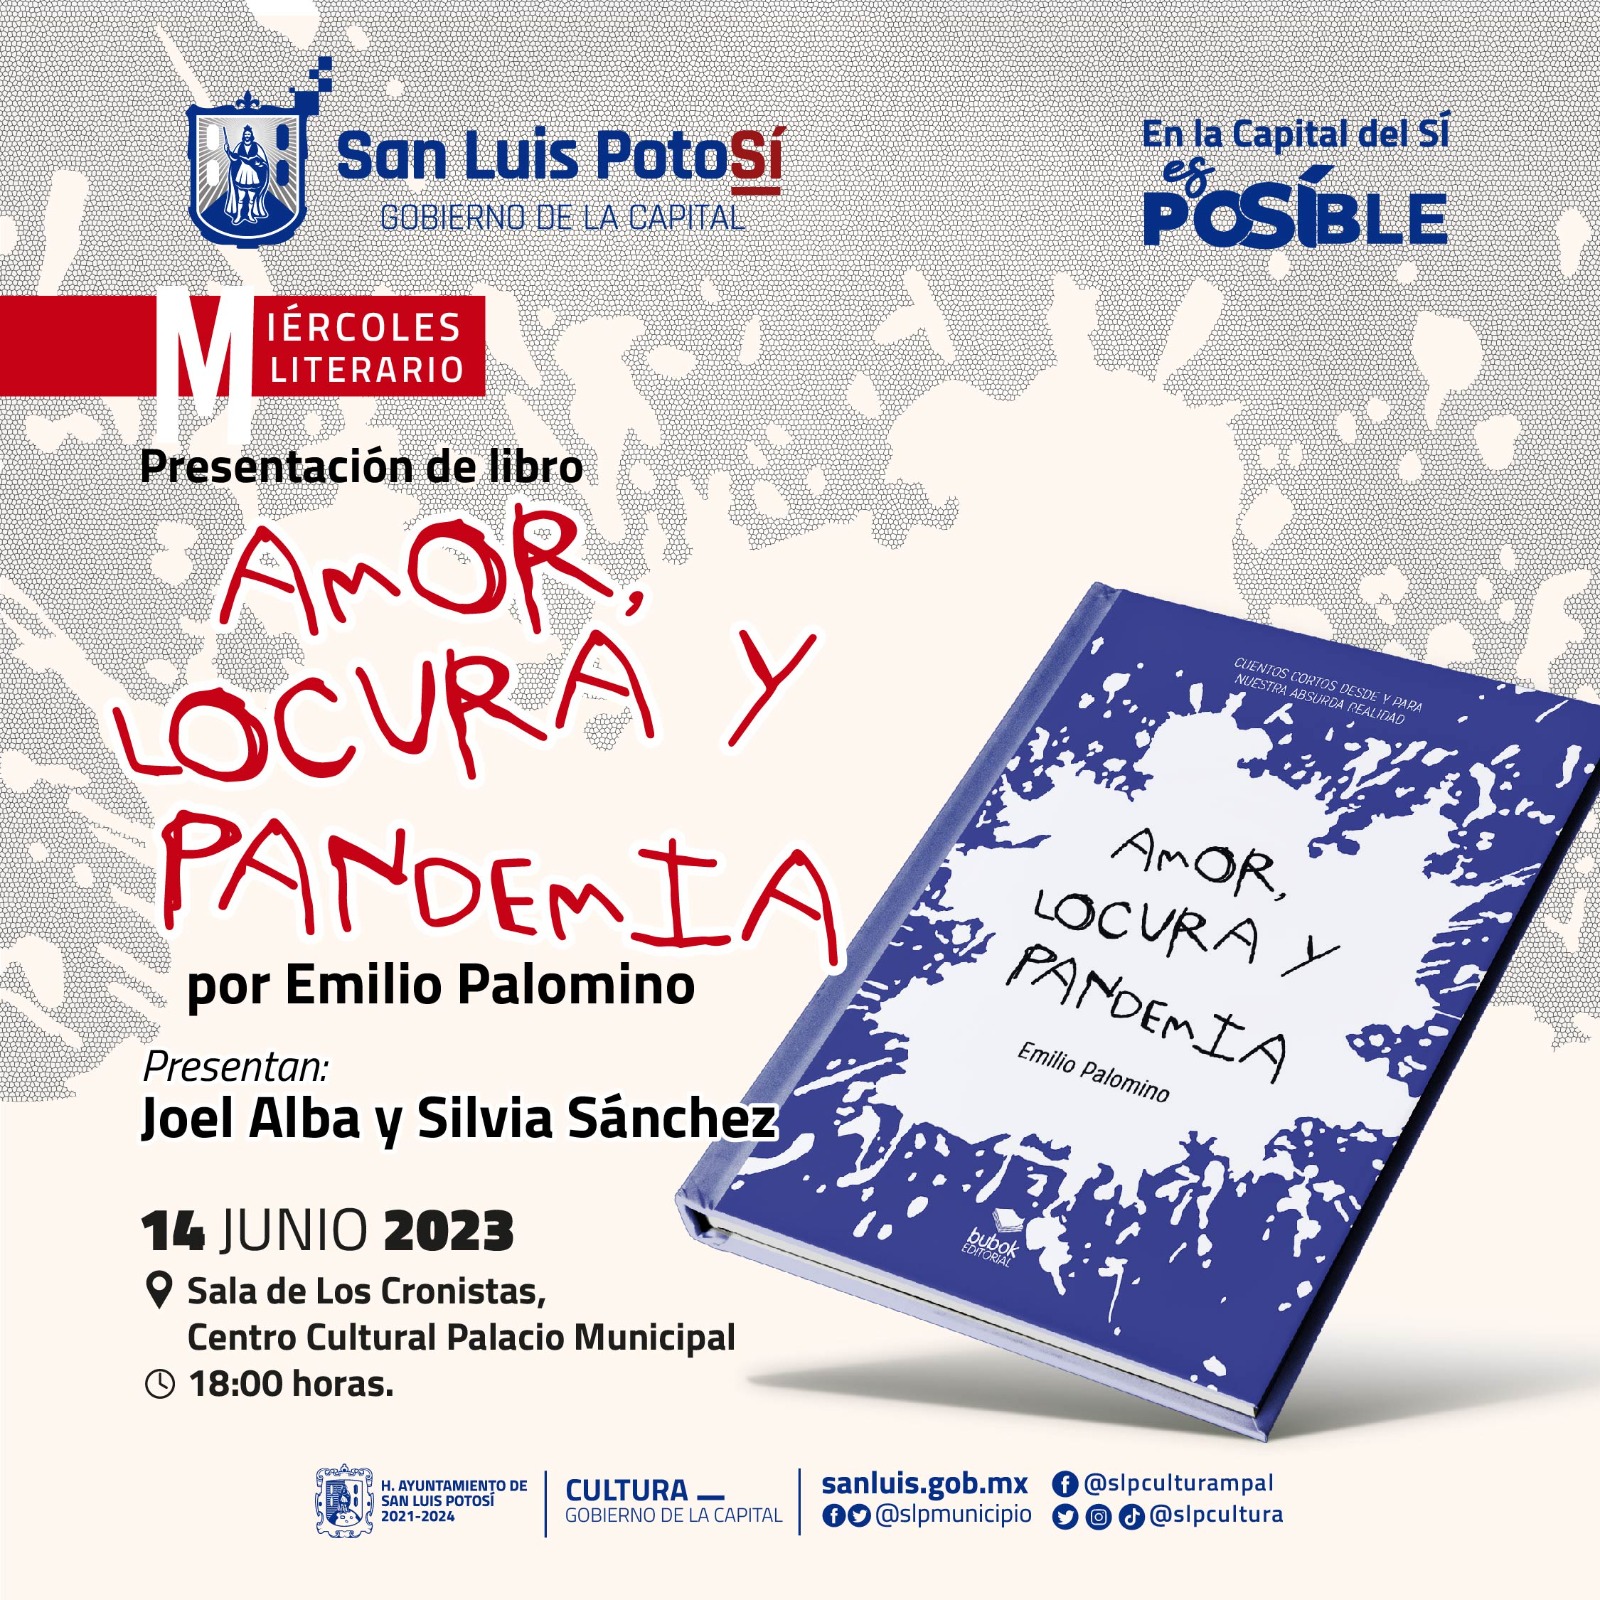 El Gobierno de la Capital invita a la presentación del libro: “Amor, locura, y pandemia”, del escritor Emilio Palomino, en el Miércoles Literario